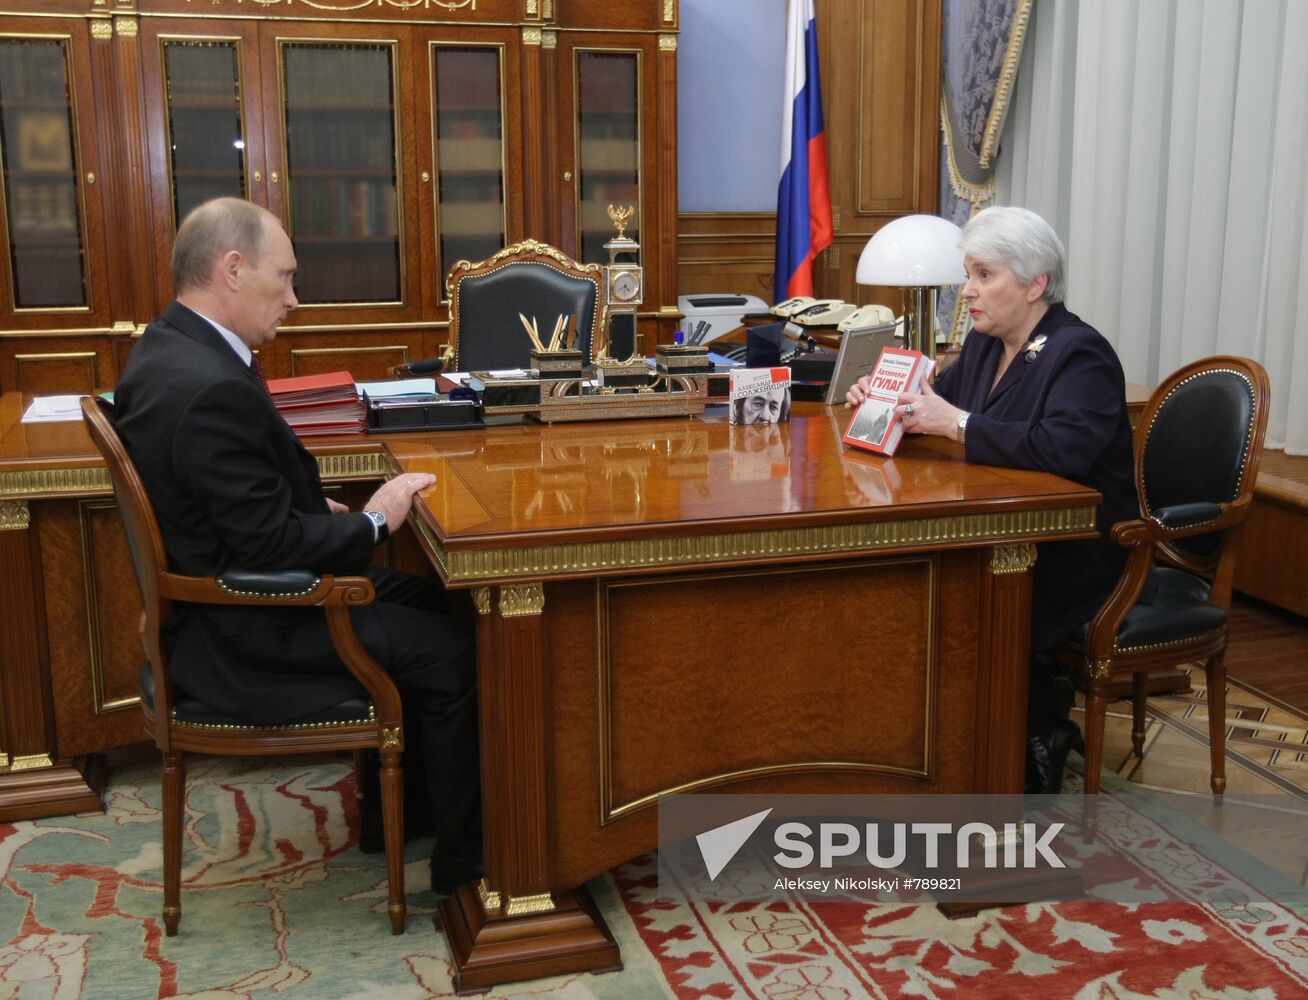 Vladimir Putin meets with Natalya Solzhenitsyna